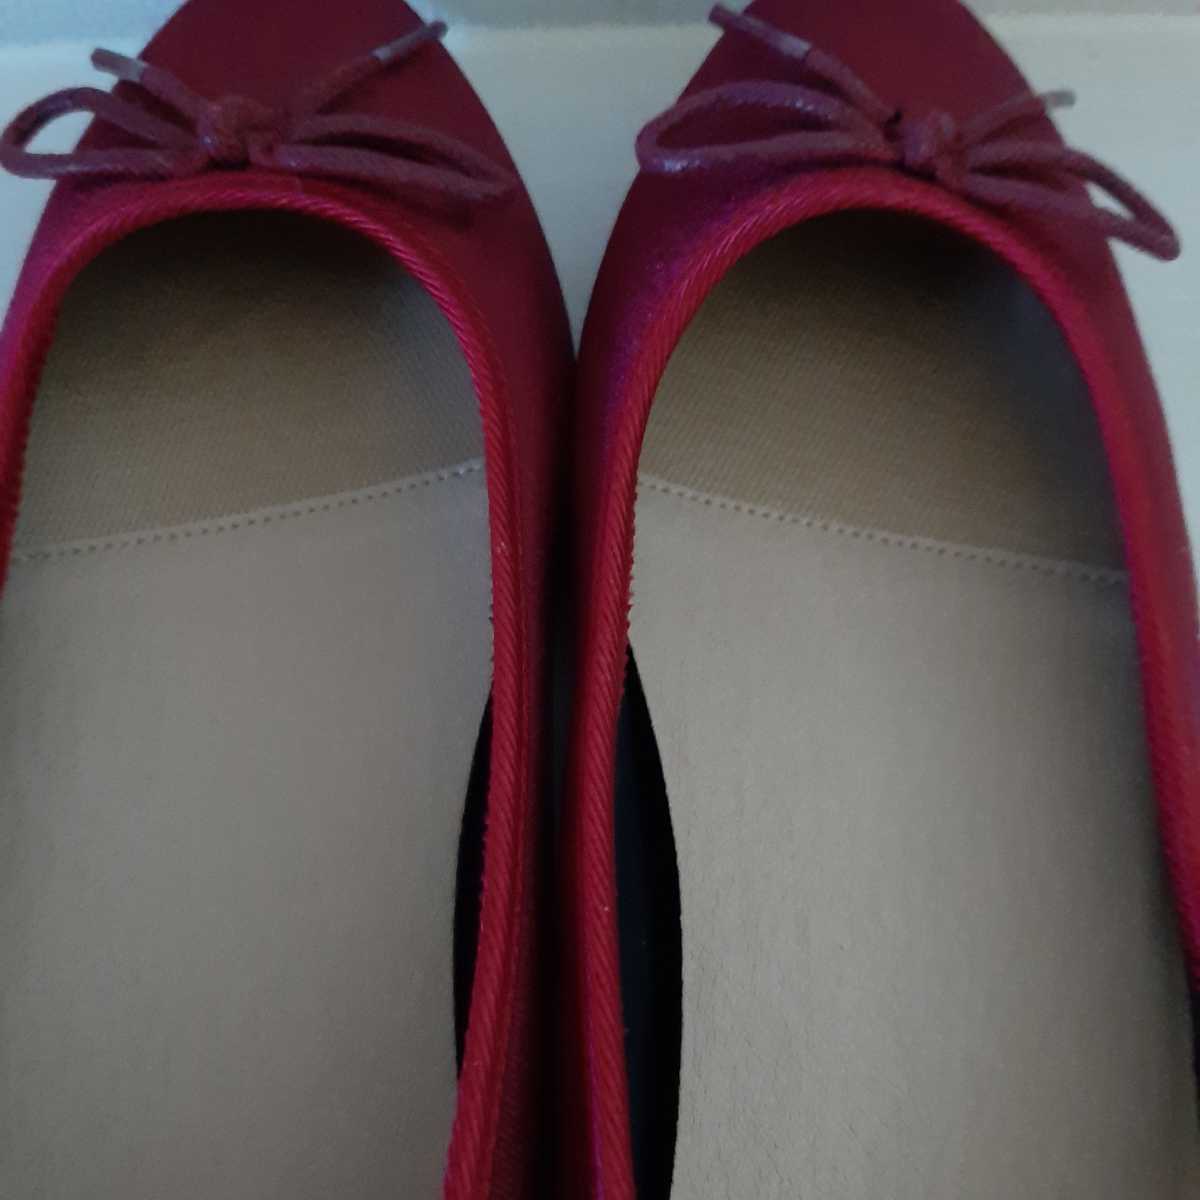  новый товар не использовался 23.5cm SANCLEA туфли-лодочки Flat балетки велюр замша лента красный party формальный женский 